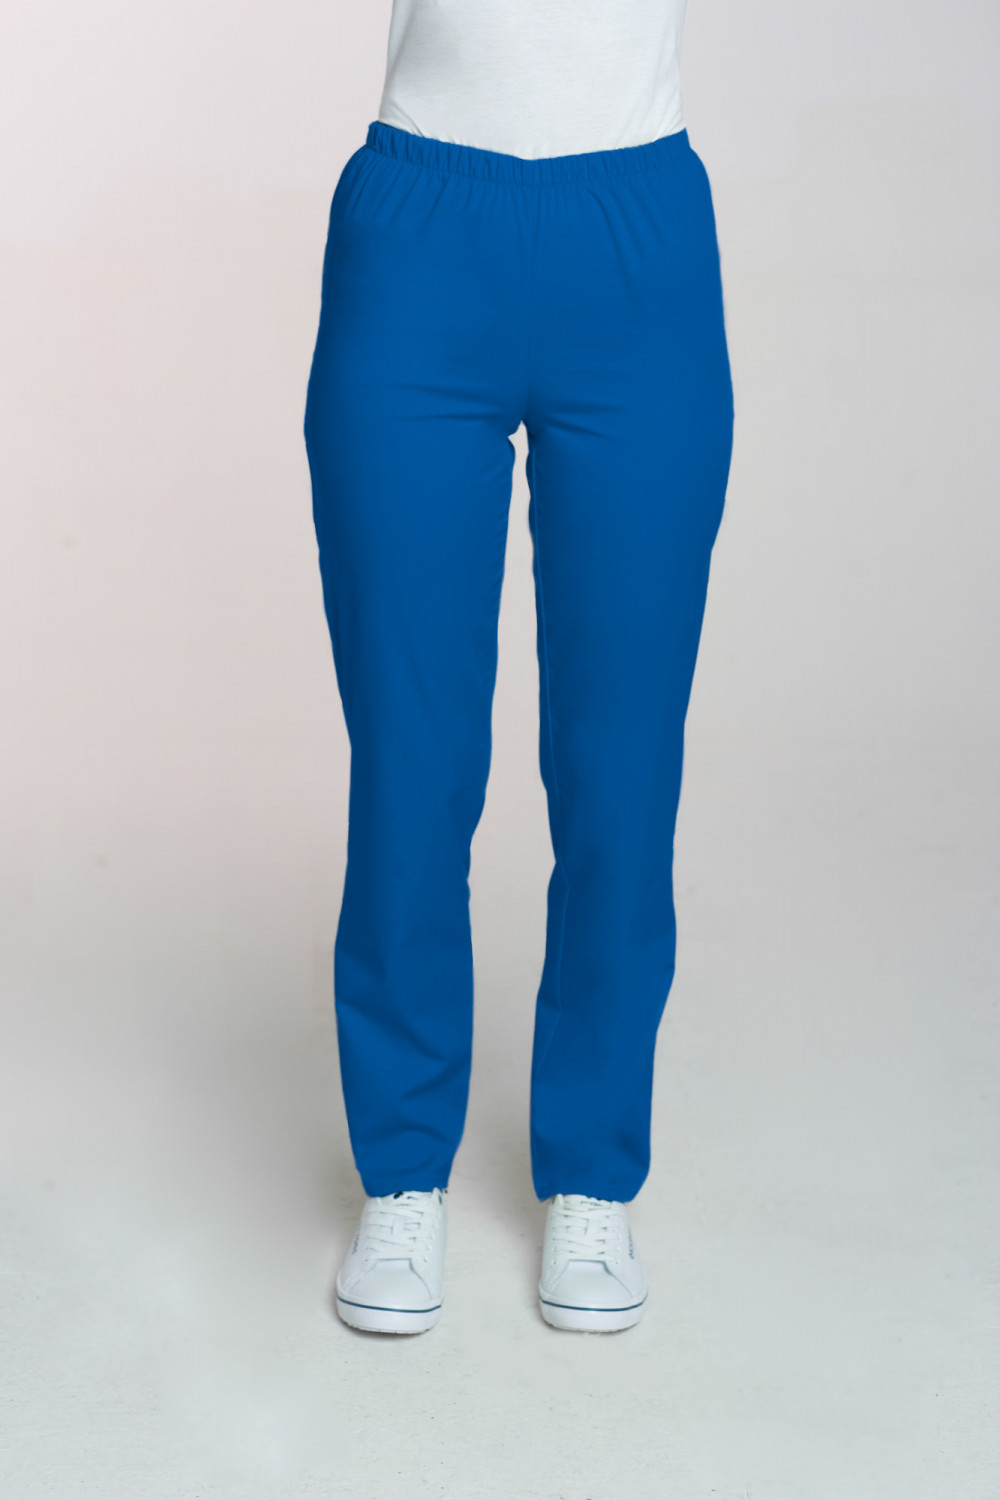 M-086 Spodnie damskie medyczne spodnie do pracy kolor indygo